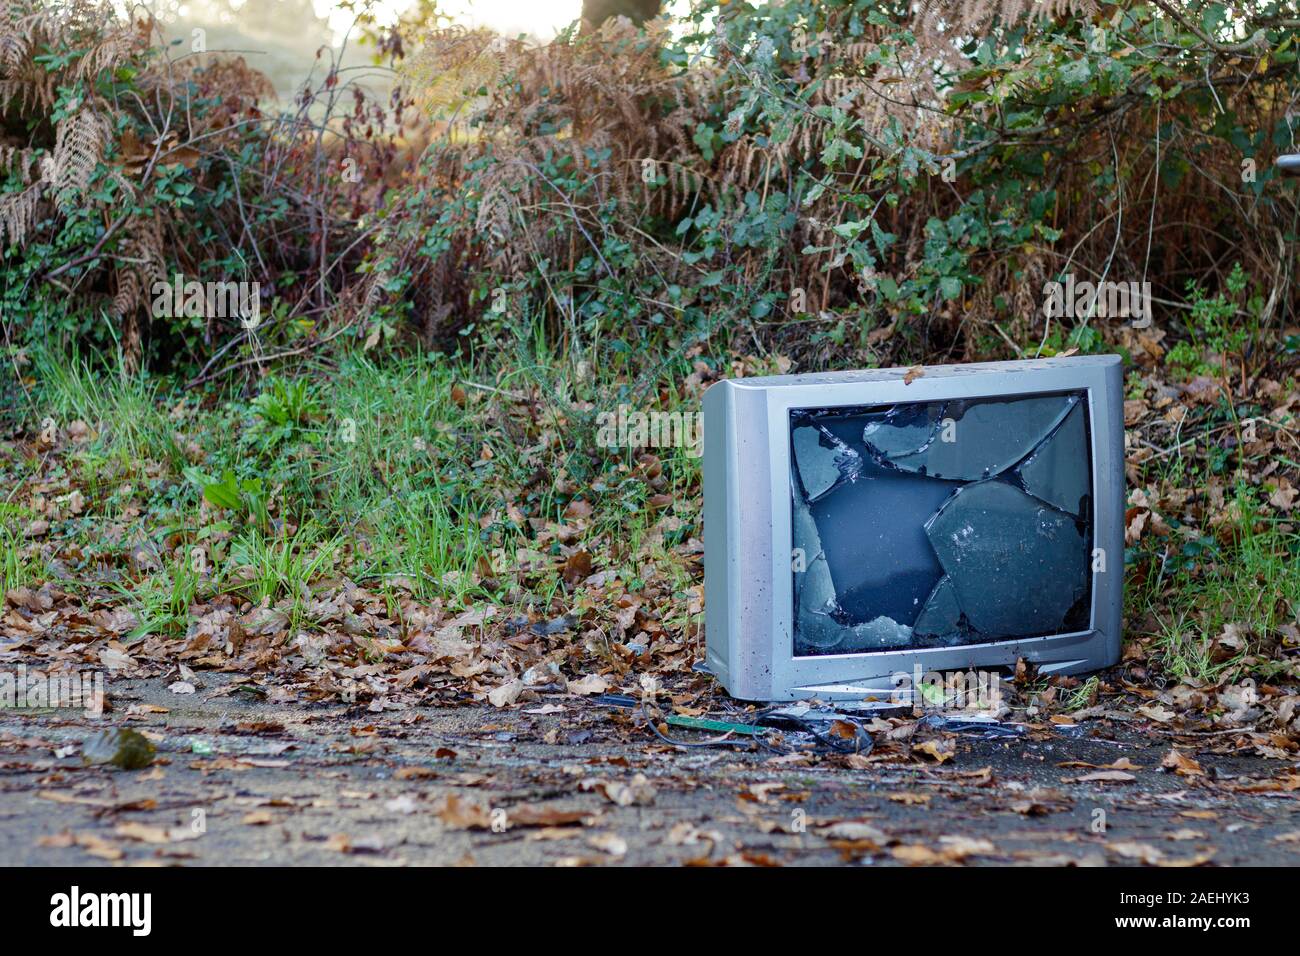 Coruna/Spanien - 08. Dezember 2019: Alte grau CRT-Fernseher zertrümmert und Gedumpten an der Seite der Straße in Coruna Spanien Stockfoto